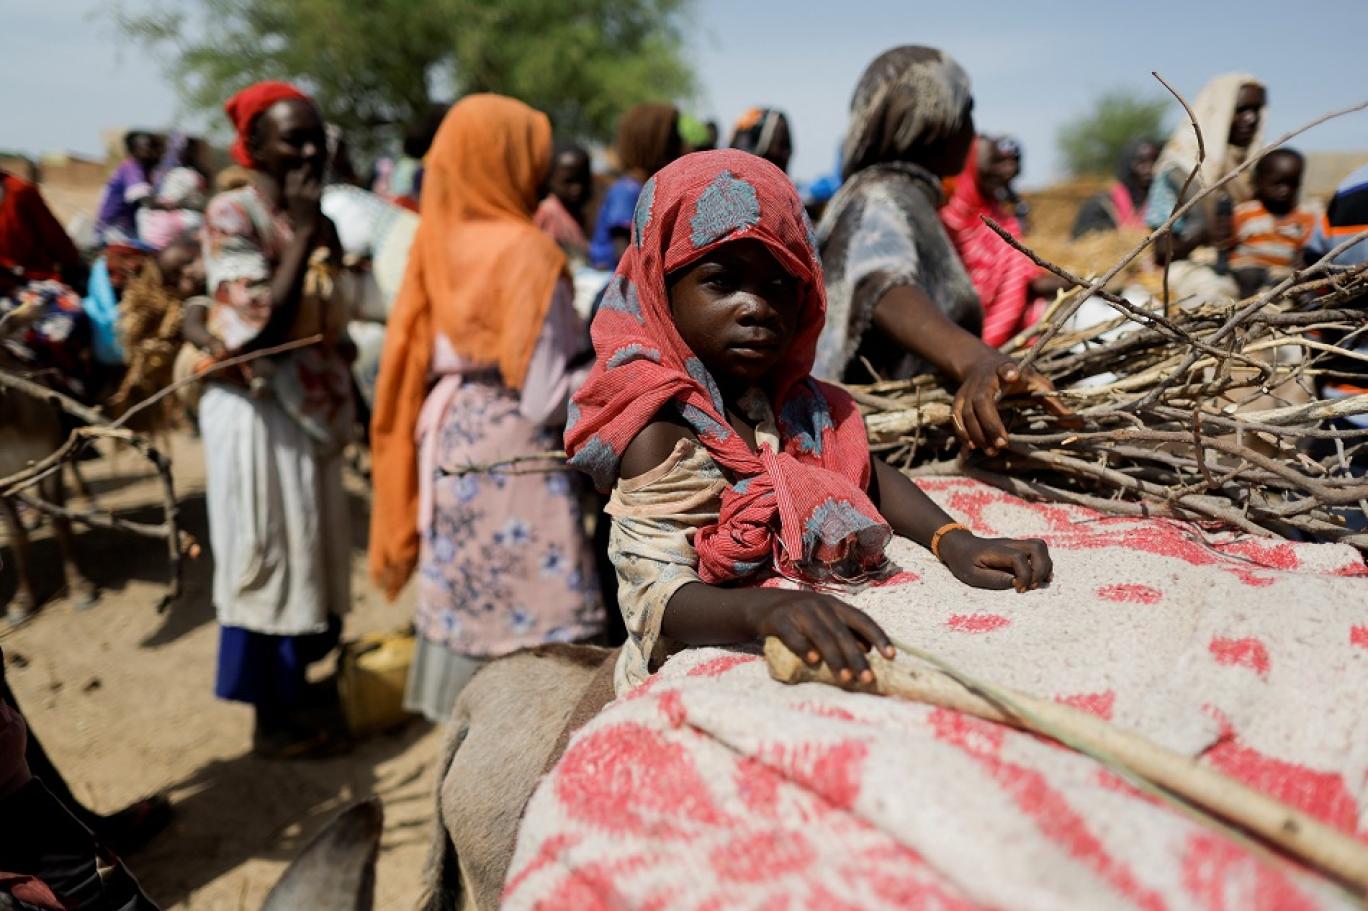 مفوضية اللاجئين: أكثر من 8 ملايين شخص أجبروا على الفرار في السودان